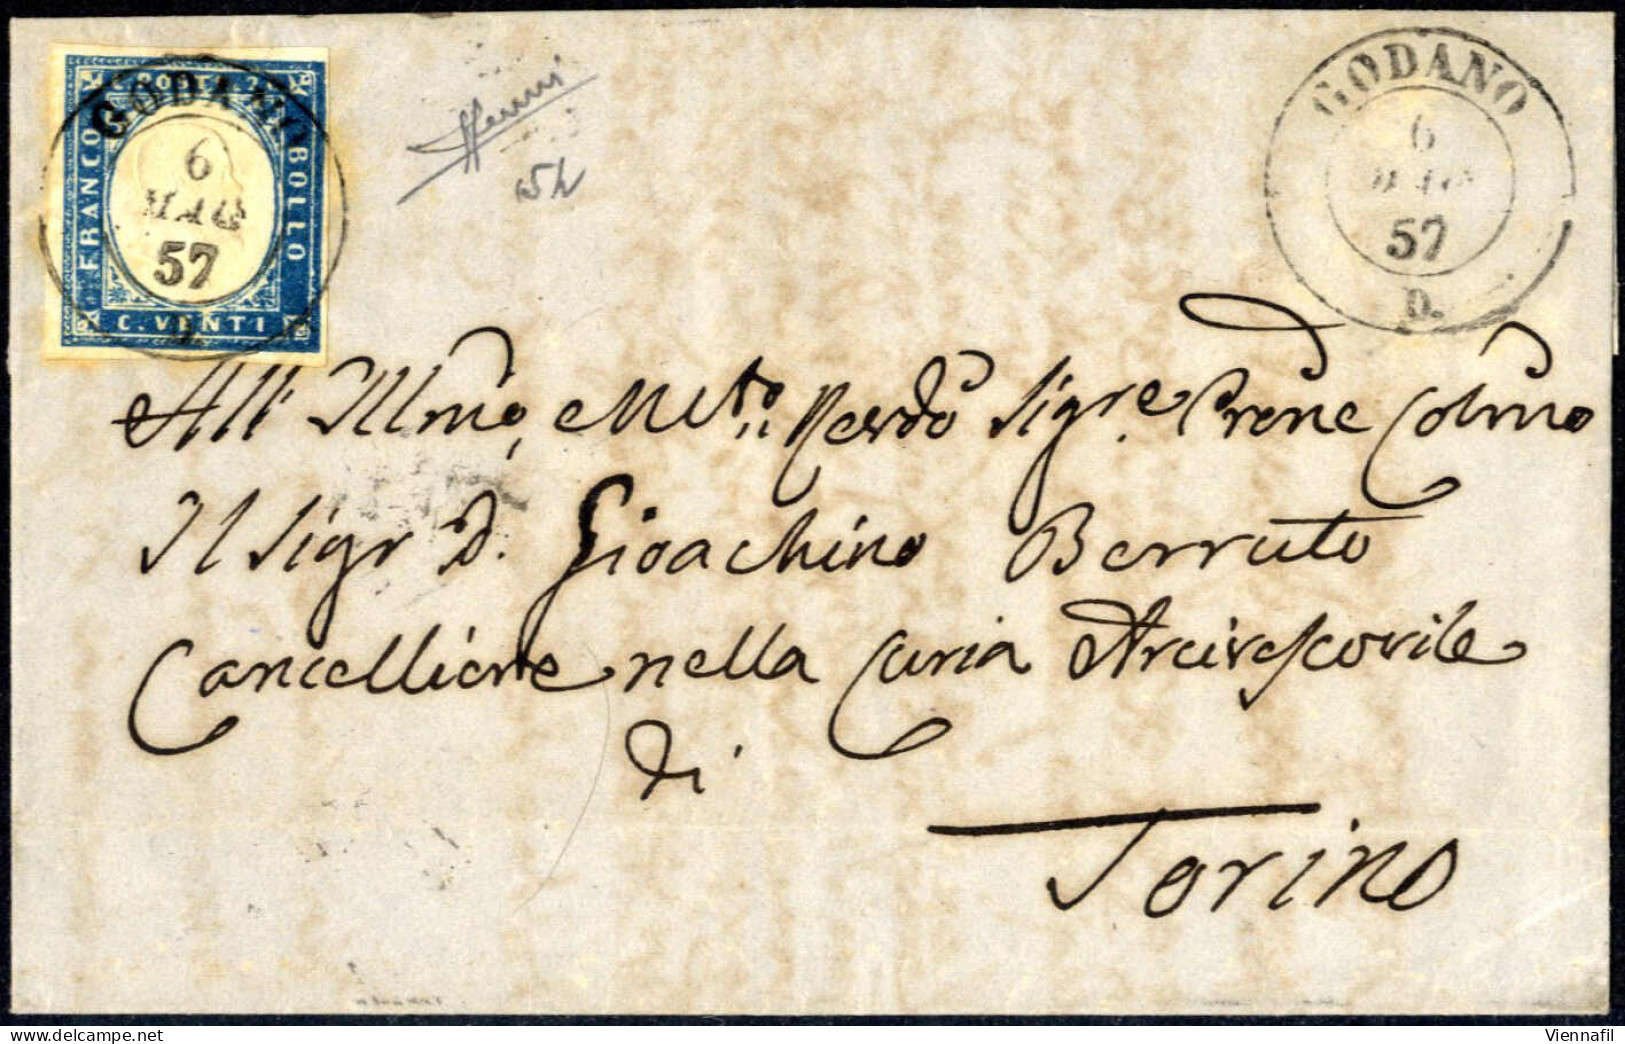 cover Sardegna 1850/61, lotto di sei buste con annullamenti della Liguria, una busta con Sass. 2 da Genova, due buste co